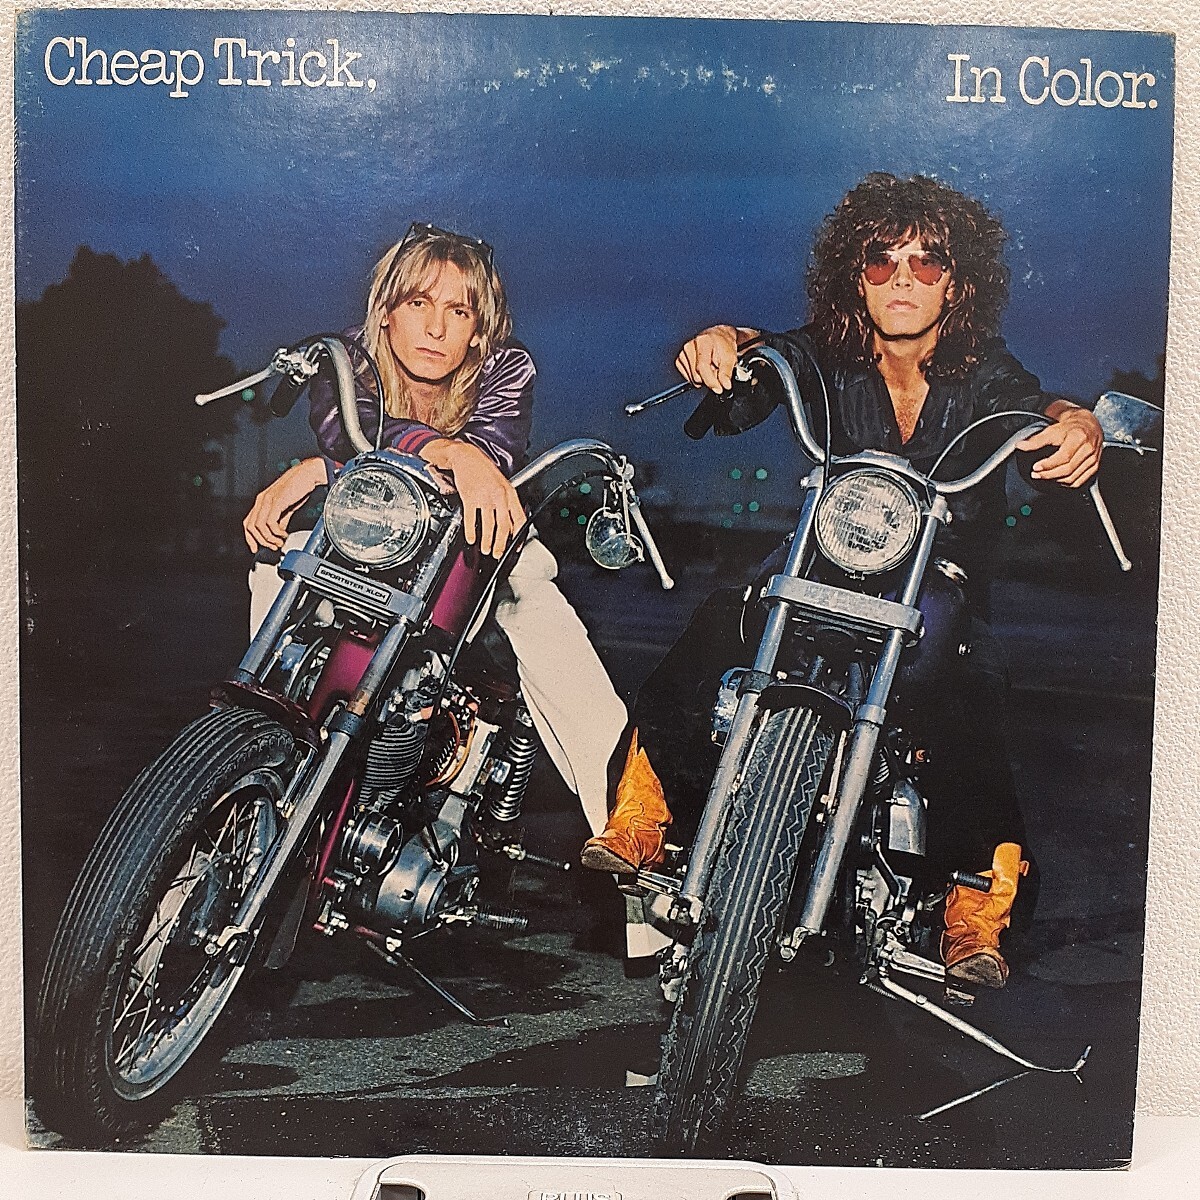 LP Cheep Trick チープ・トリック - 蒼ざめたハイウェイ (In Color) / 25AP 728 国内盤 レコード_画像1